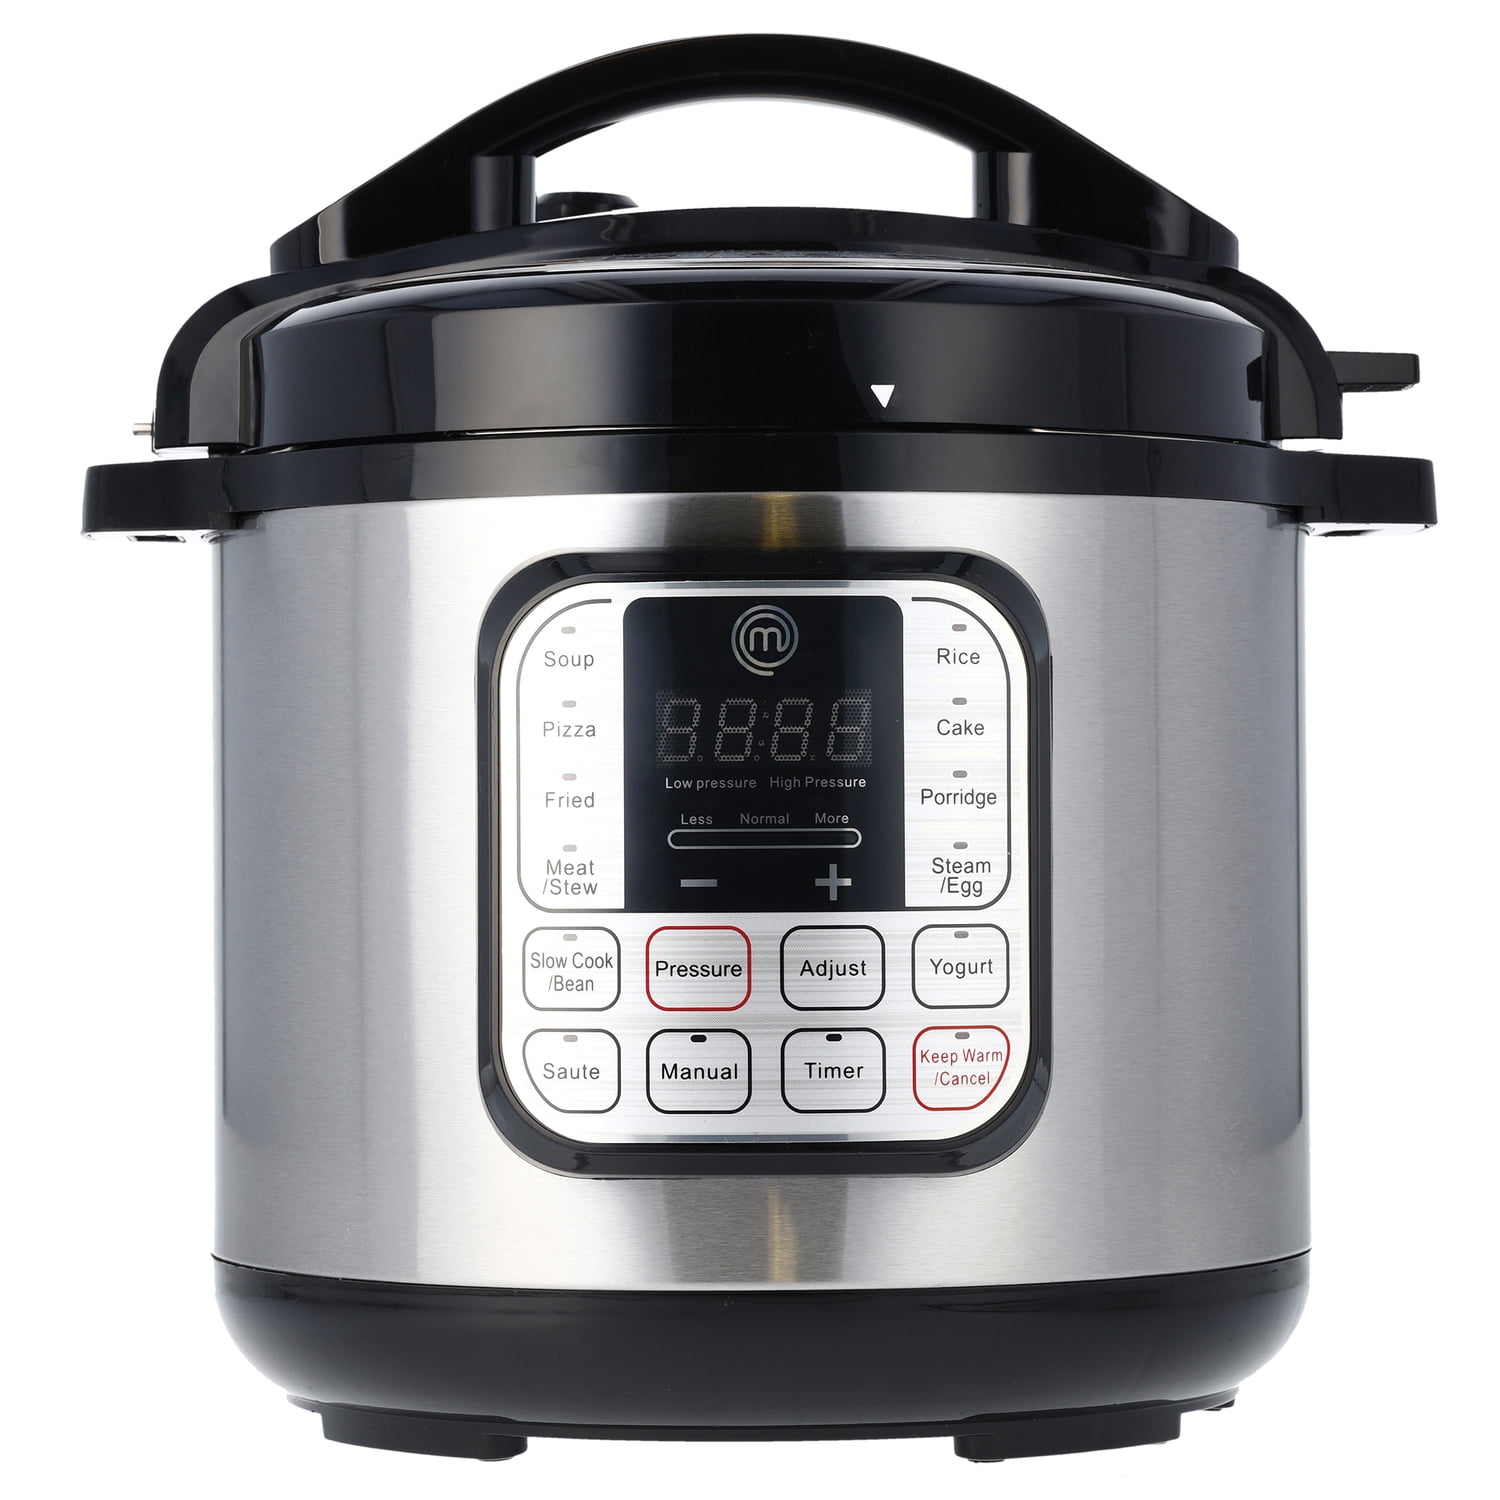 $79.99 - MasterChef 13-in-1 Non-stick Pot Pressure Cooker - 6 QT